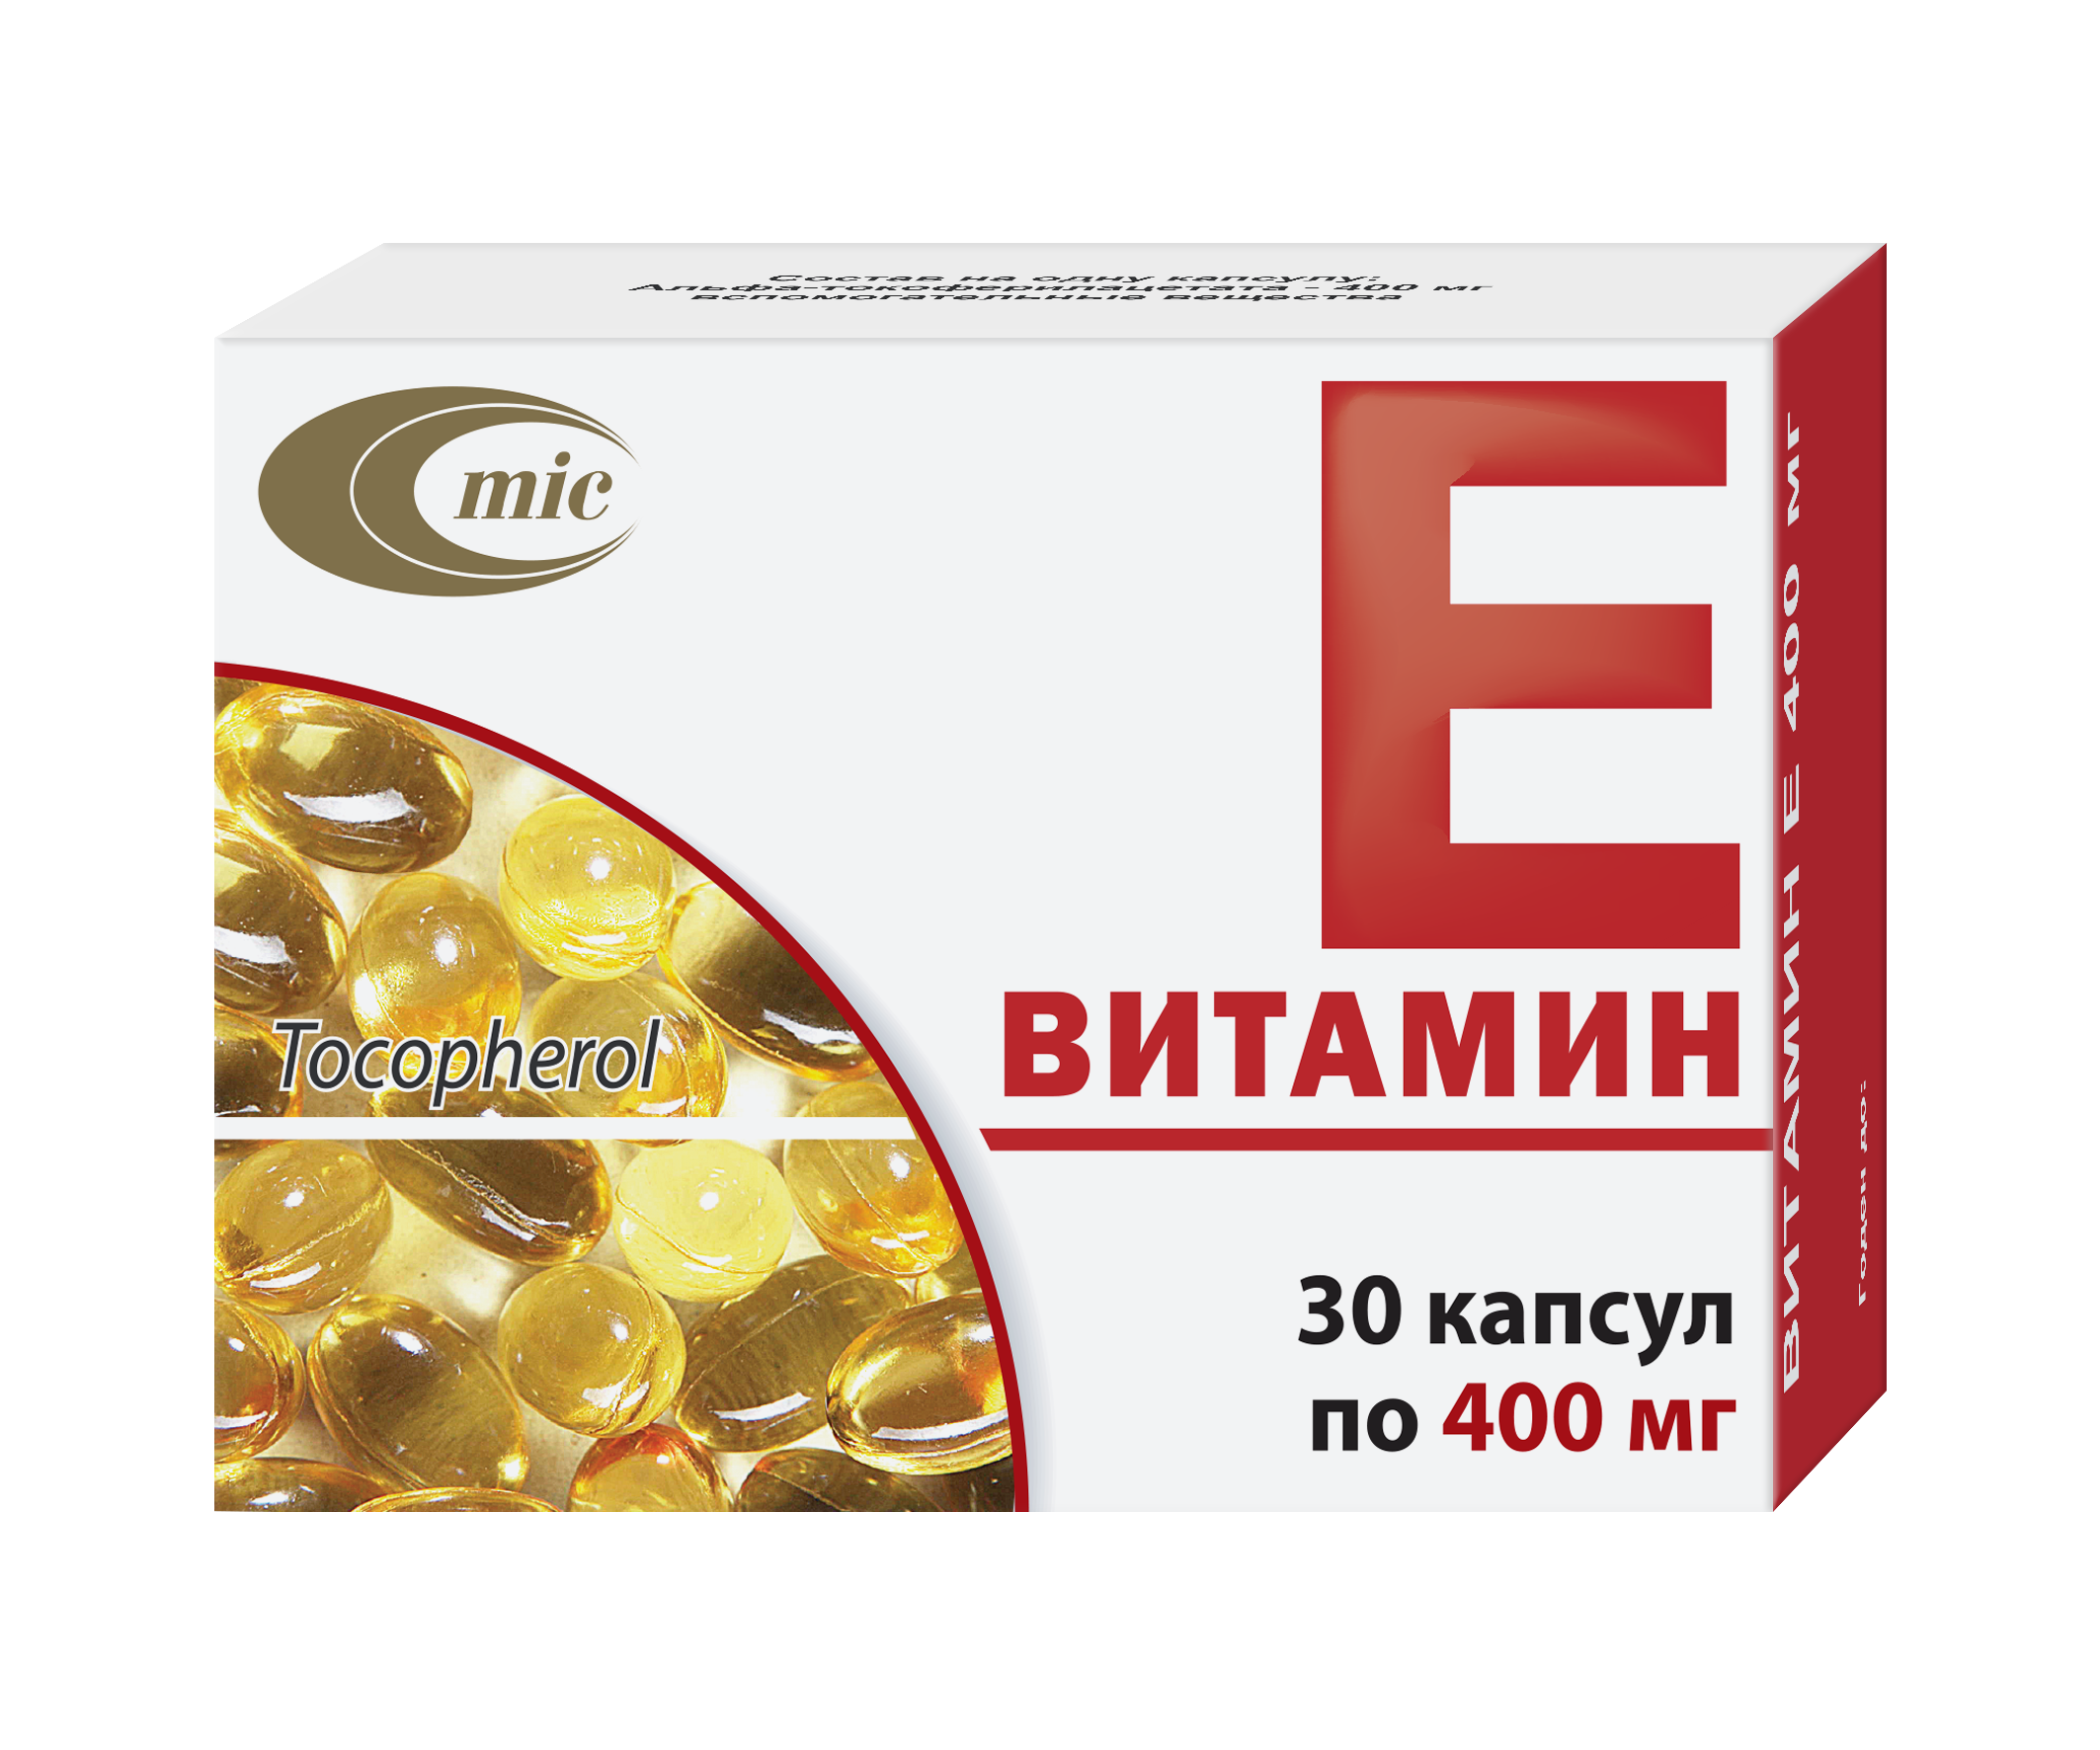 Витамин Е 400 мг - витамины при планировании беременности